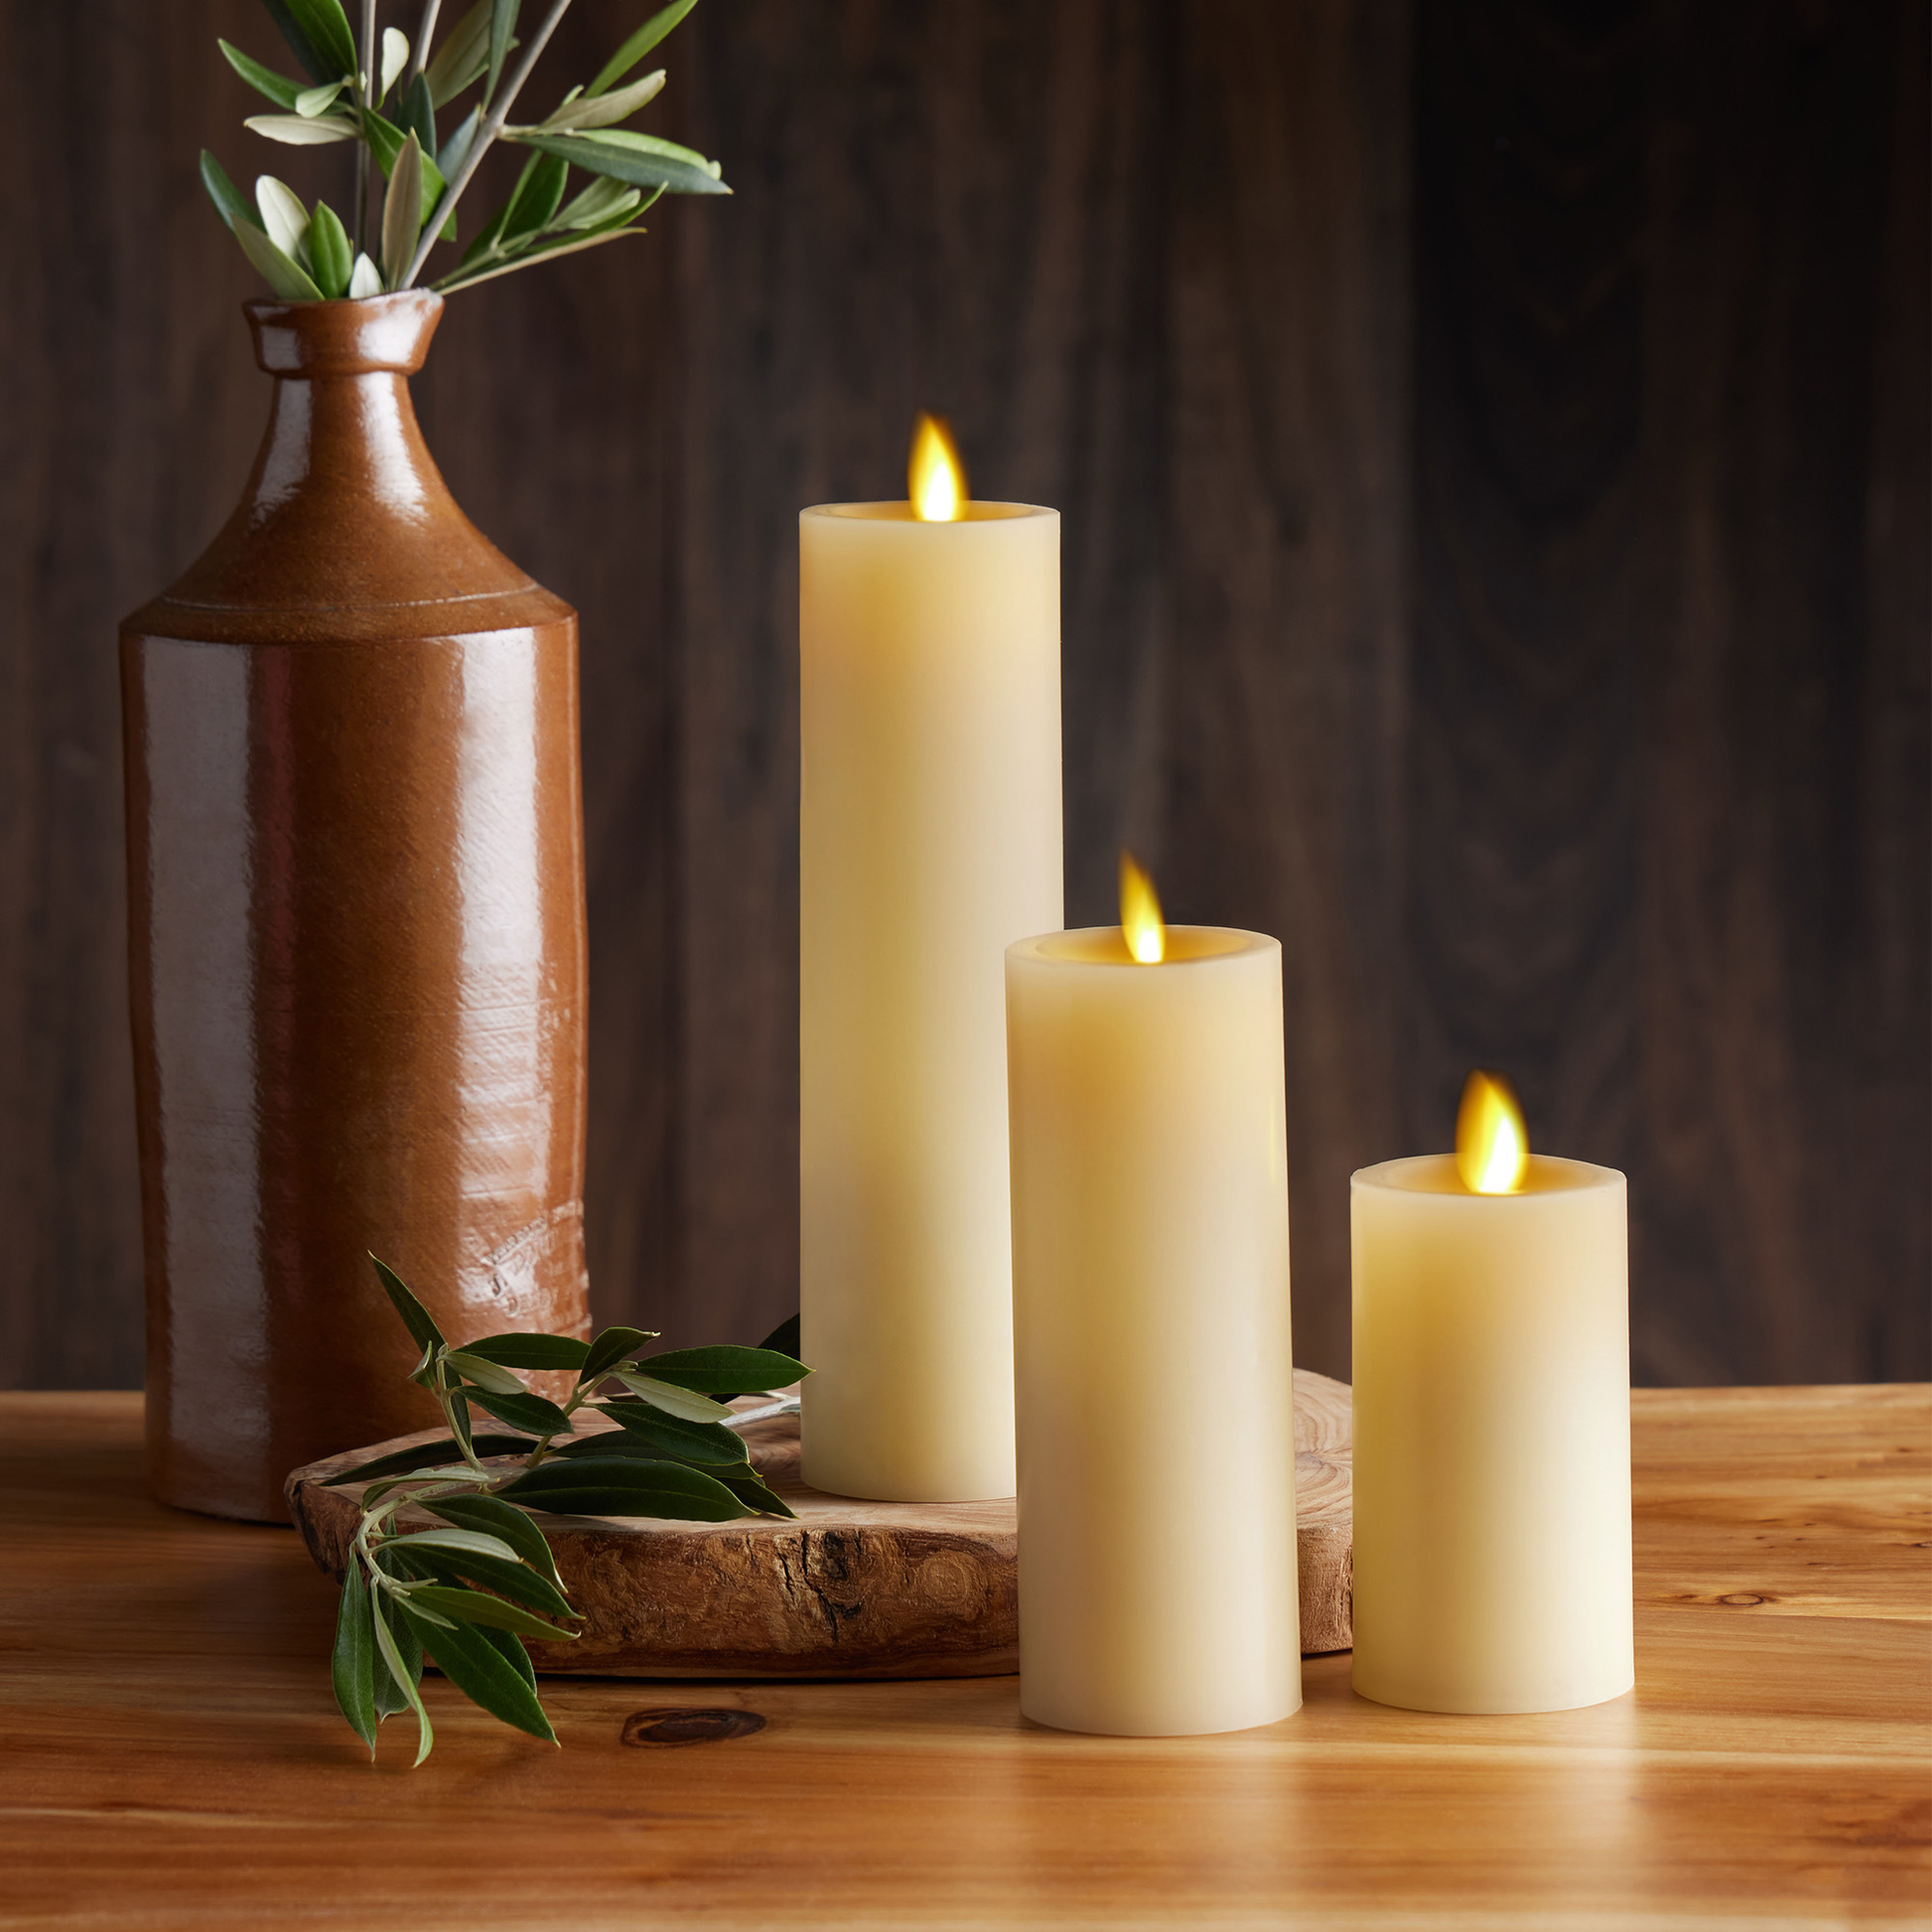 an image of Luminara's ivory flameless candle pillar